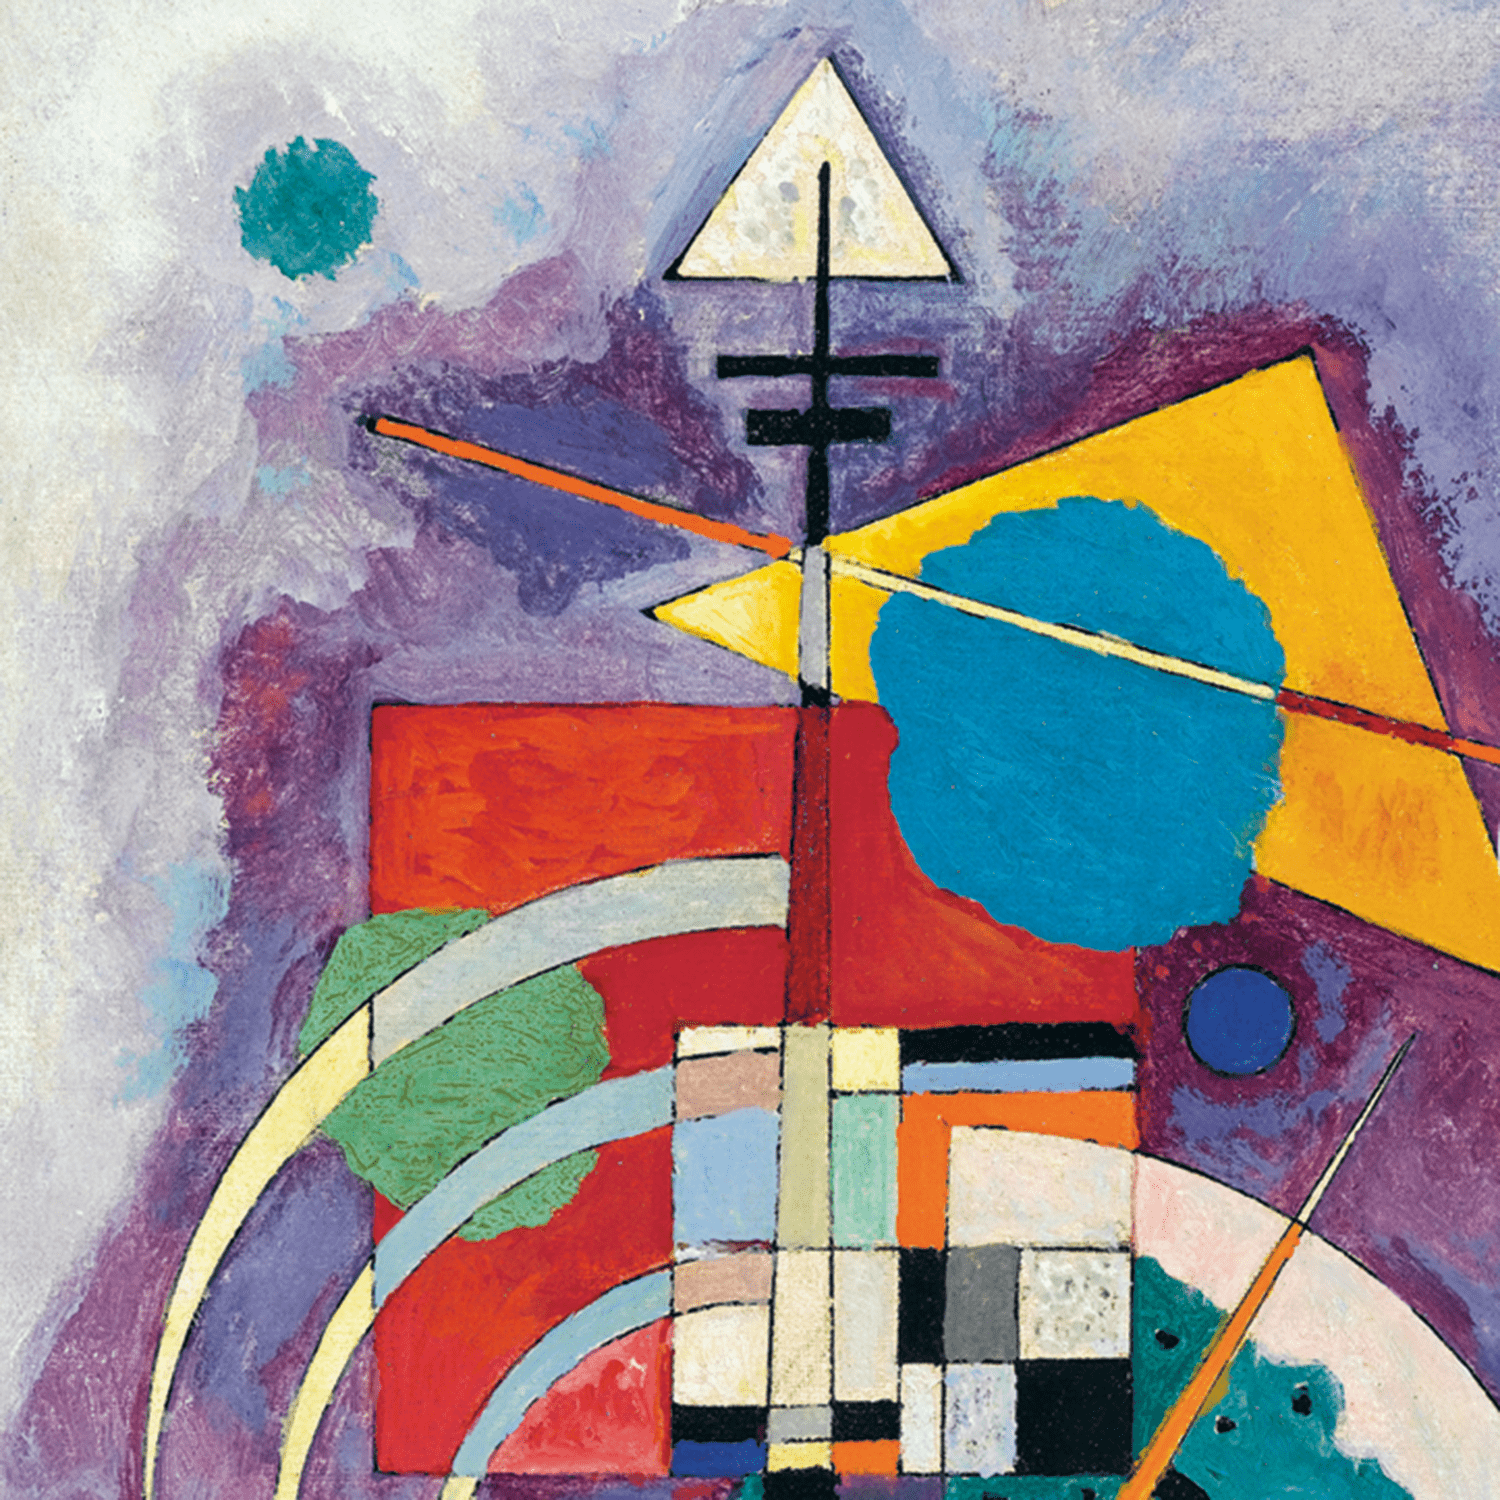 εικόνα του Vasily Kandinsky - The Great Masters of Art